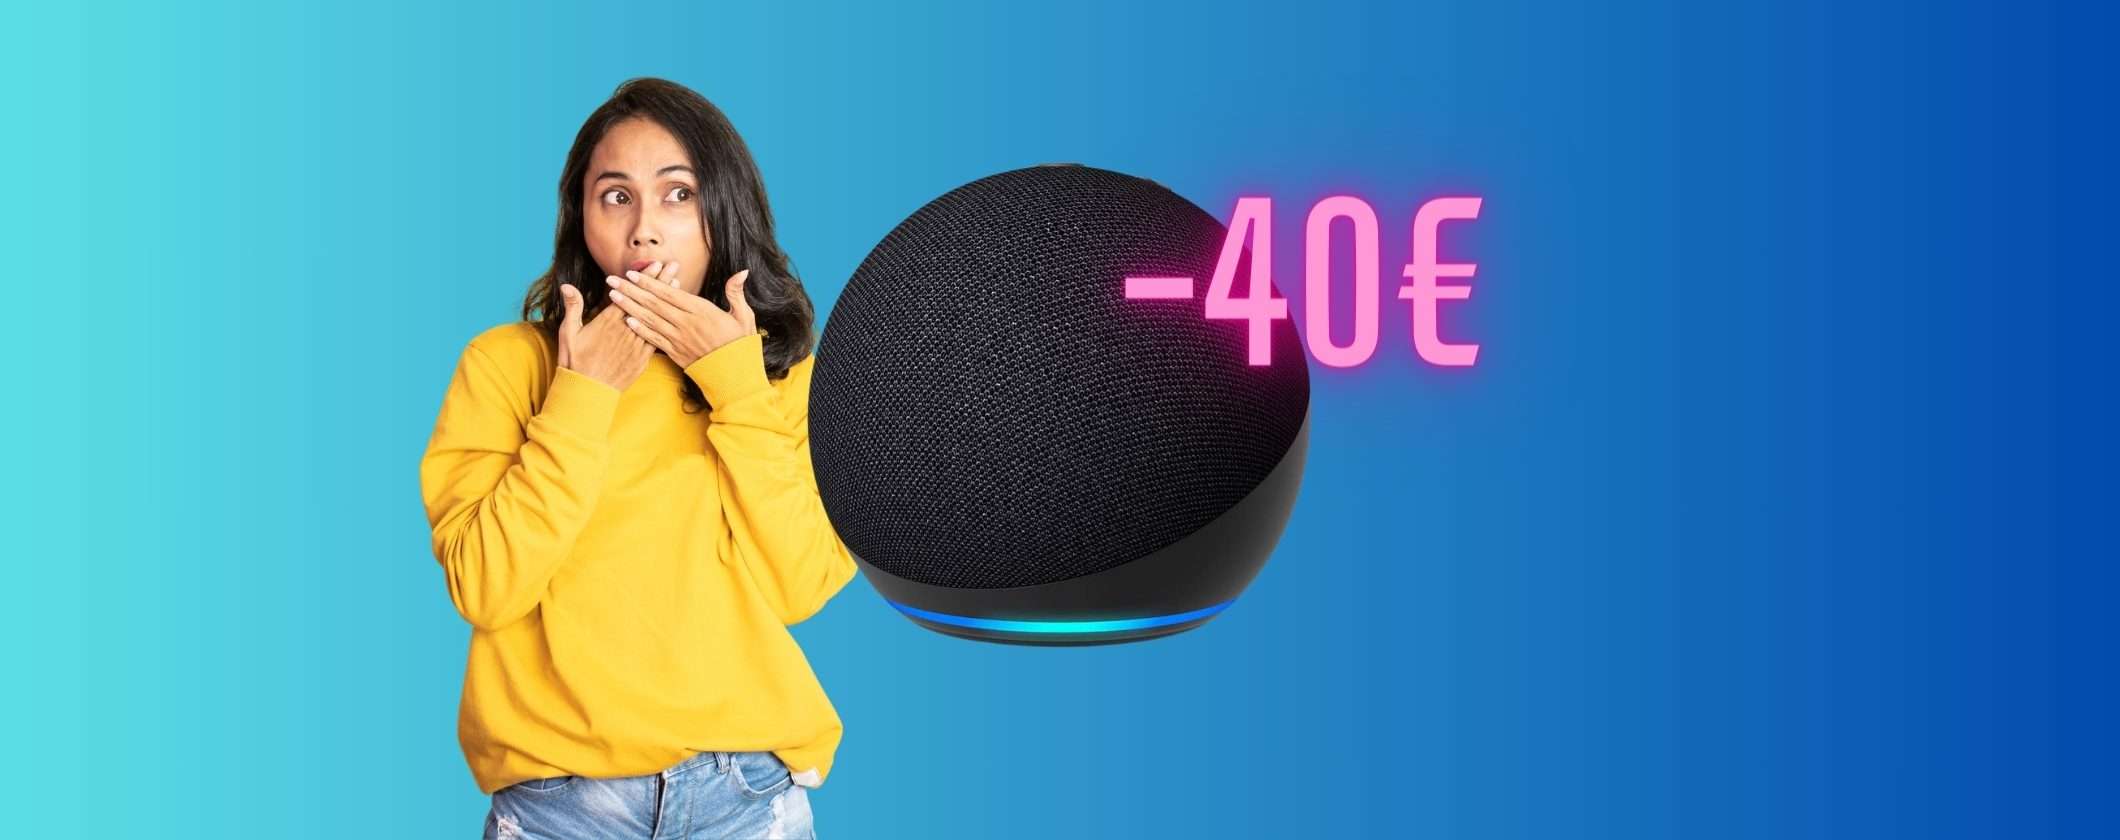 Echo Dot 5: 40€ di SUPER SCONTO su Unieuro